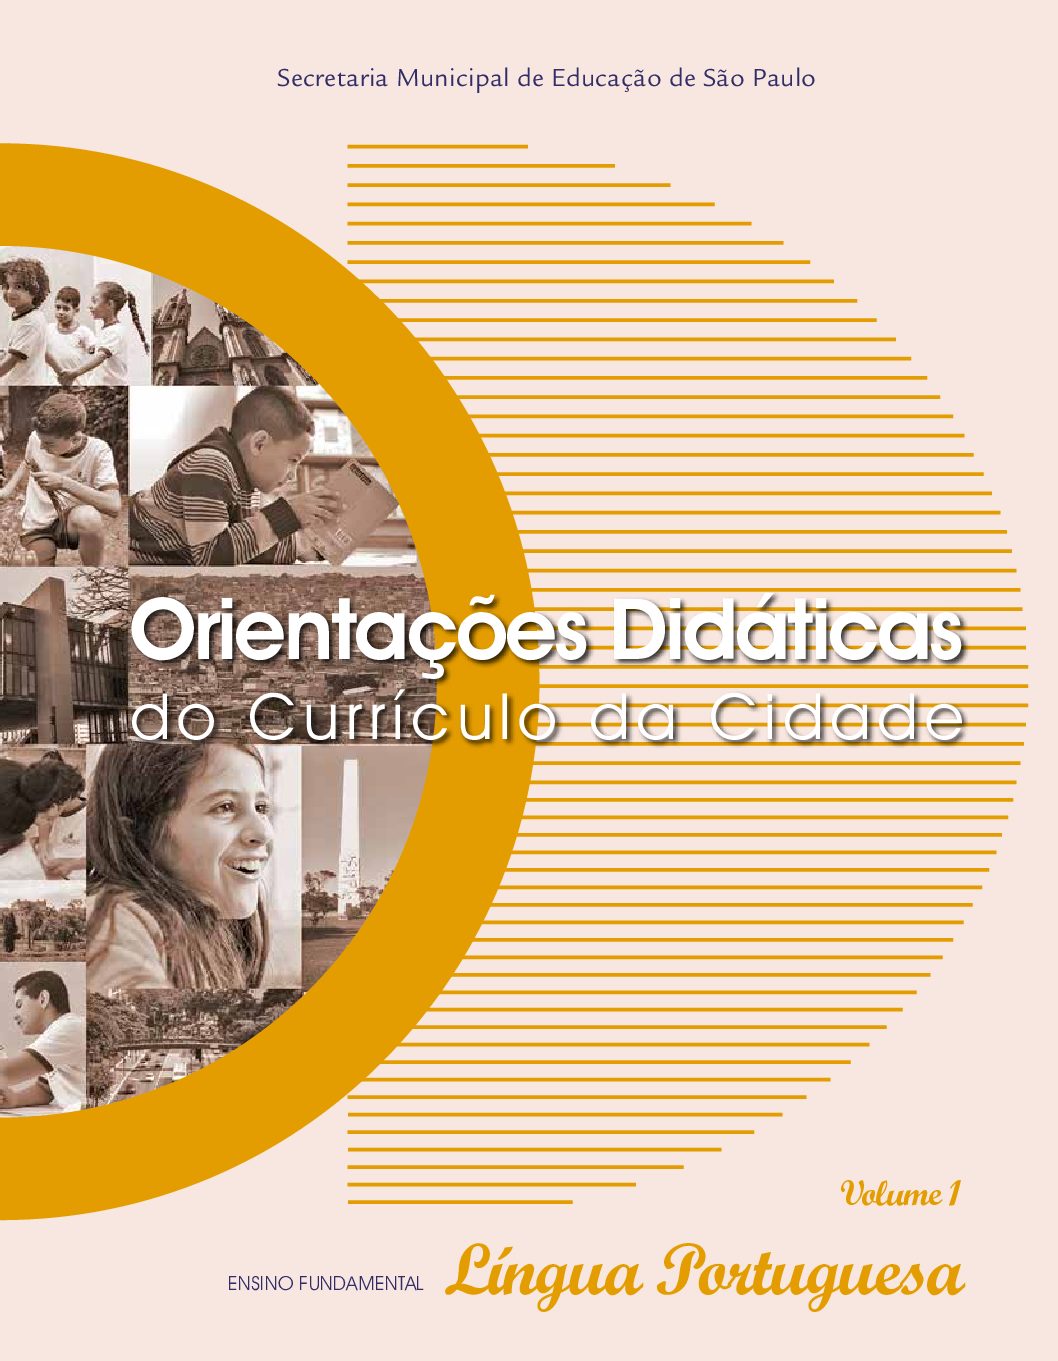 Orientações didáticas para o componente curricular Língua Portuguesa no Ensino Fundamental - volume 1.